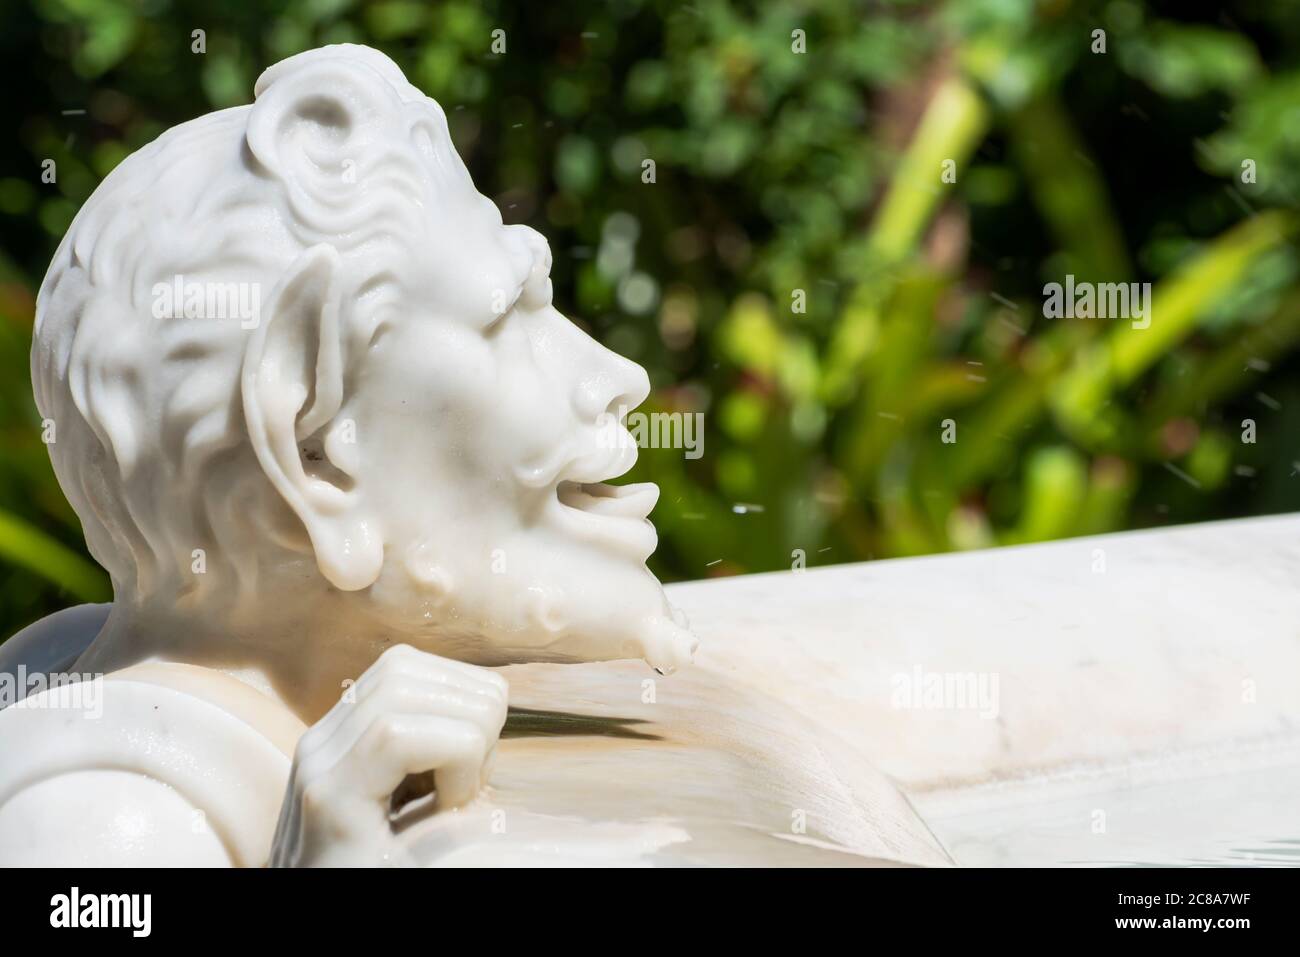 ´s primer plano en la cara de la estatua de mármol que muestra a un hombre sediento bebiendo de una fuente Foto de stock